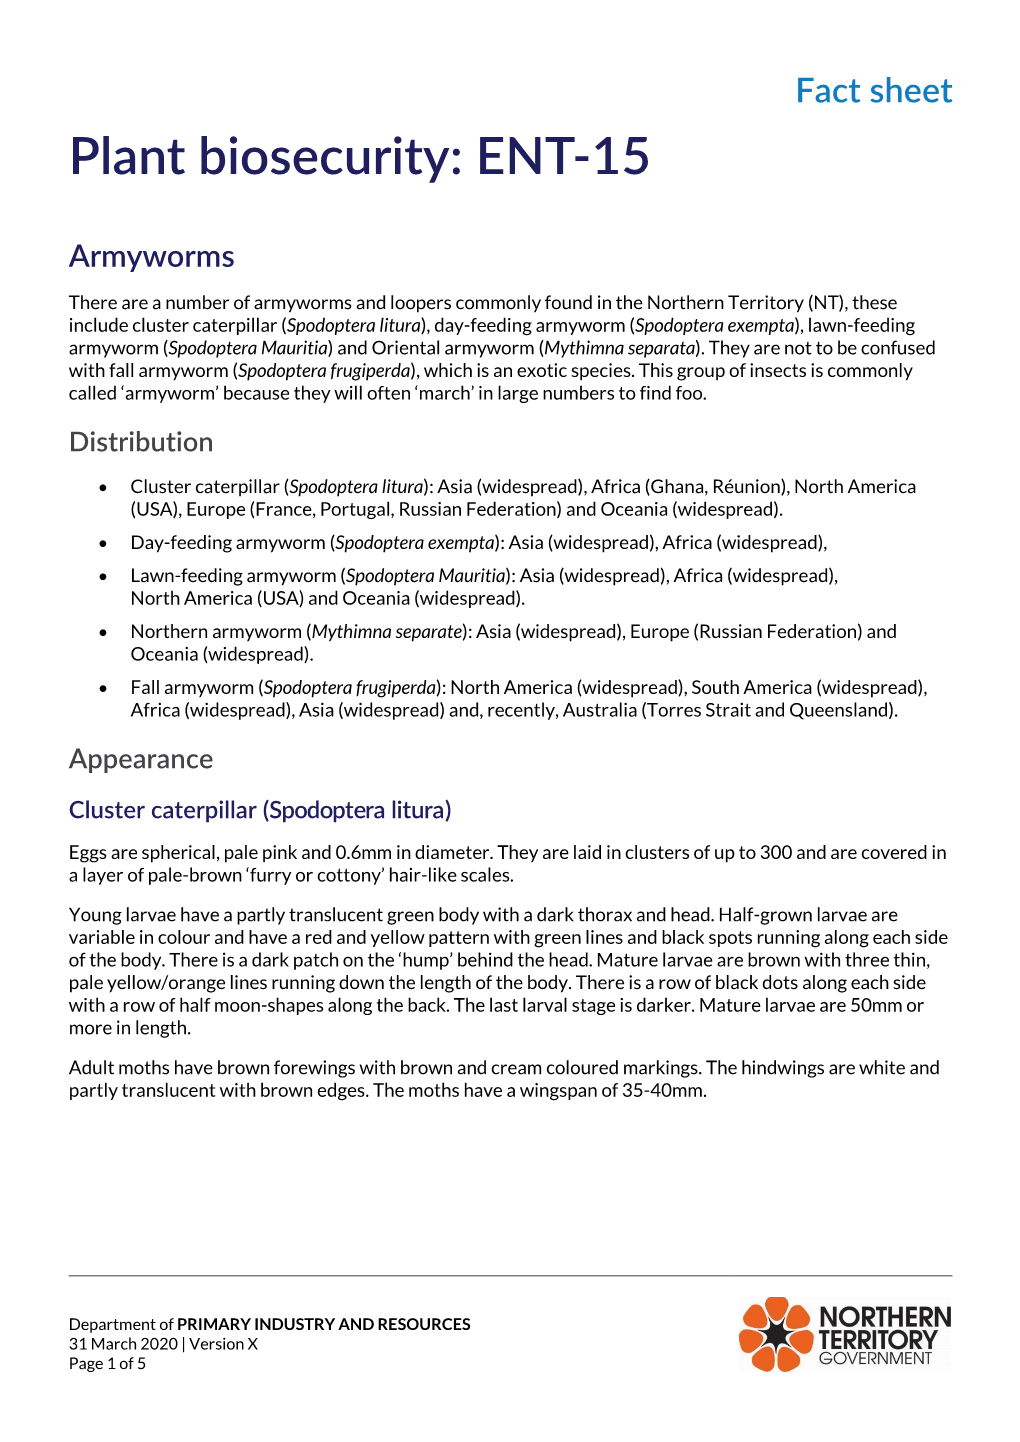 Armyworms Factsheet